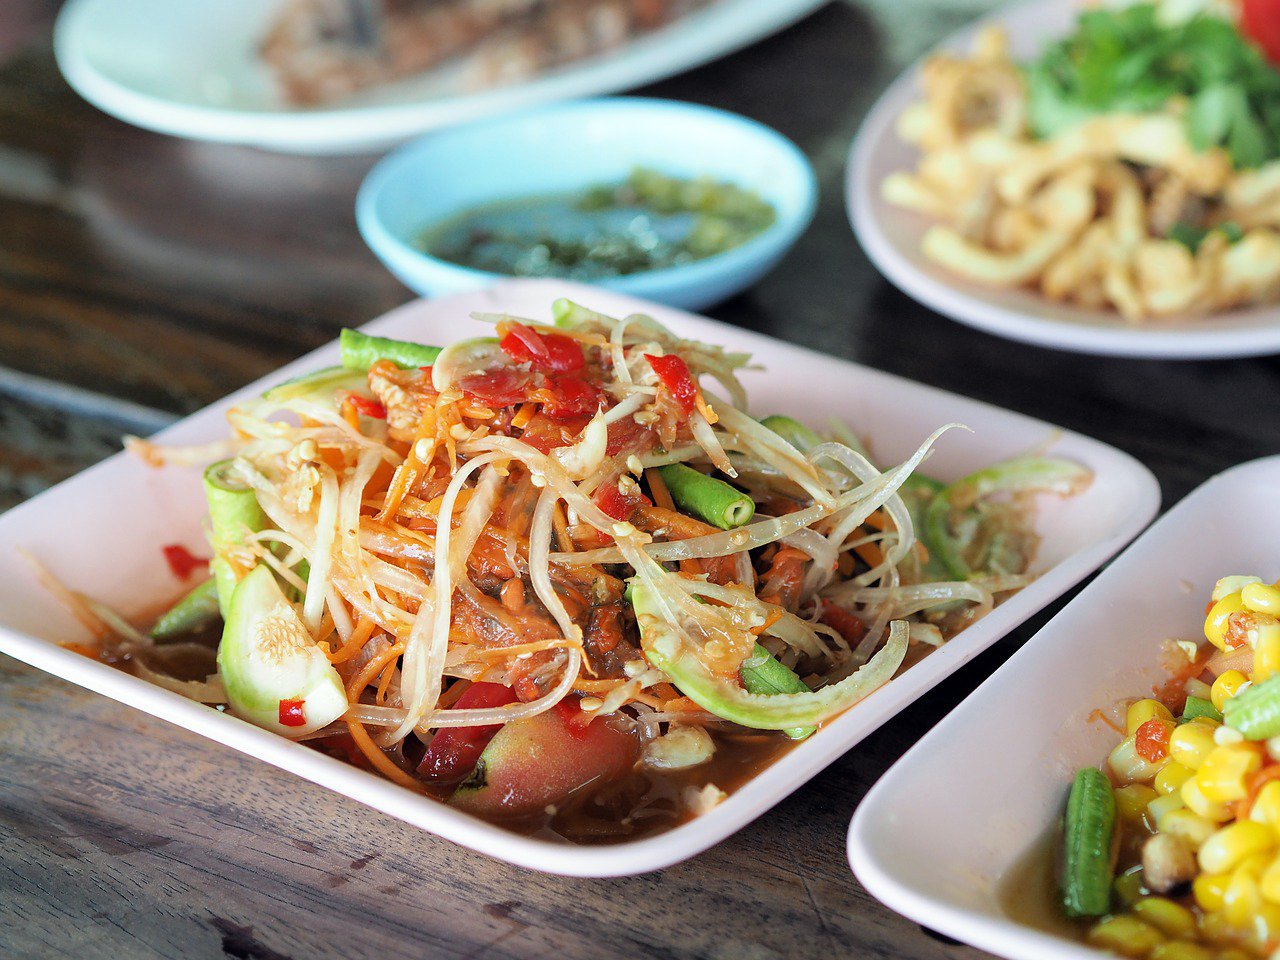 comida picante en tailandia - ensalada